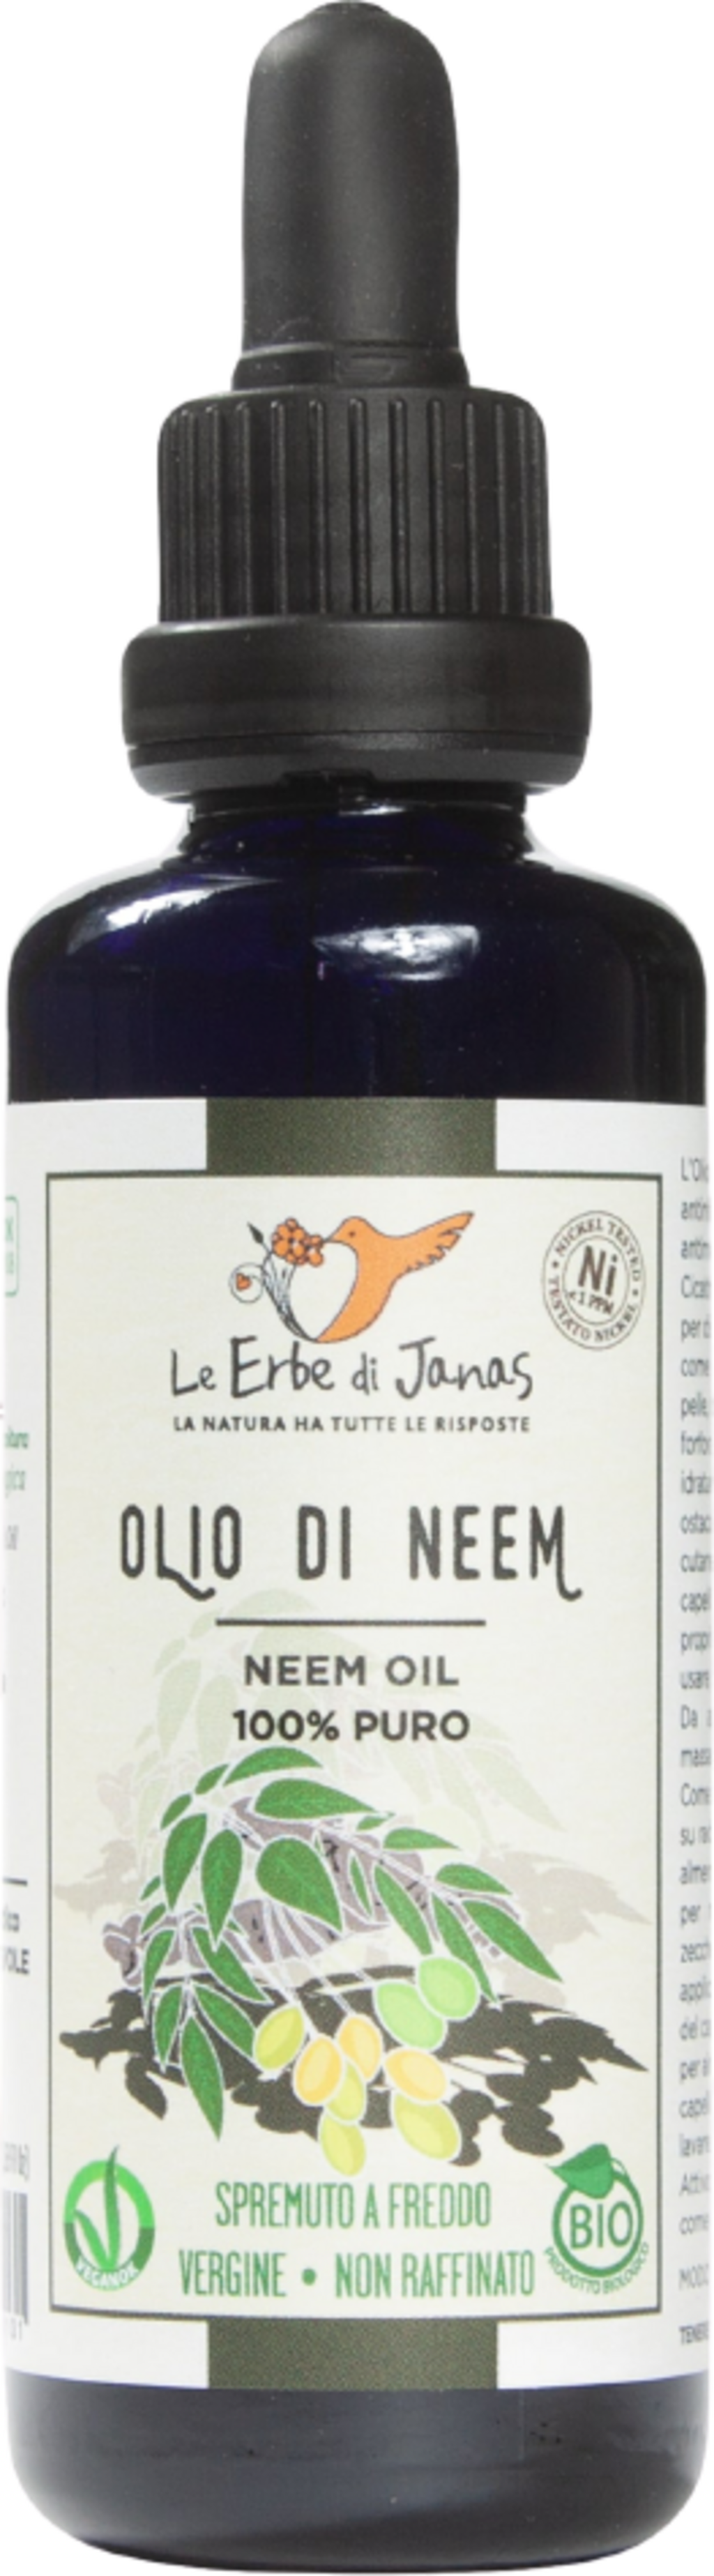 Le Erbe di Janas Olio di Neem - 50 ml